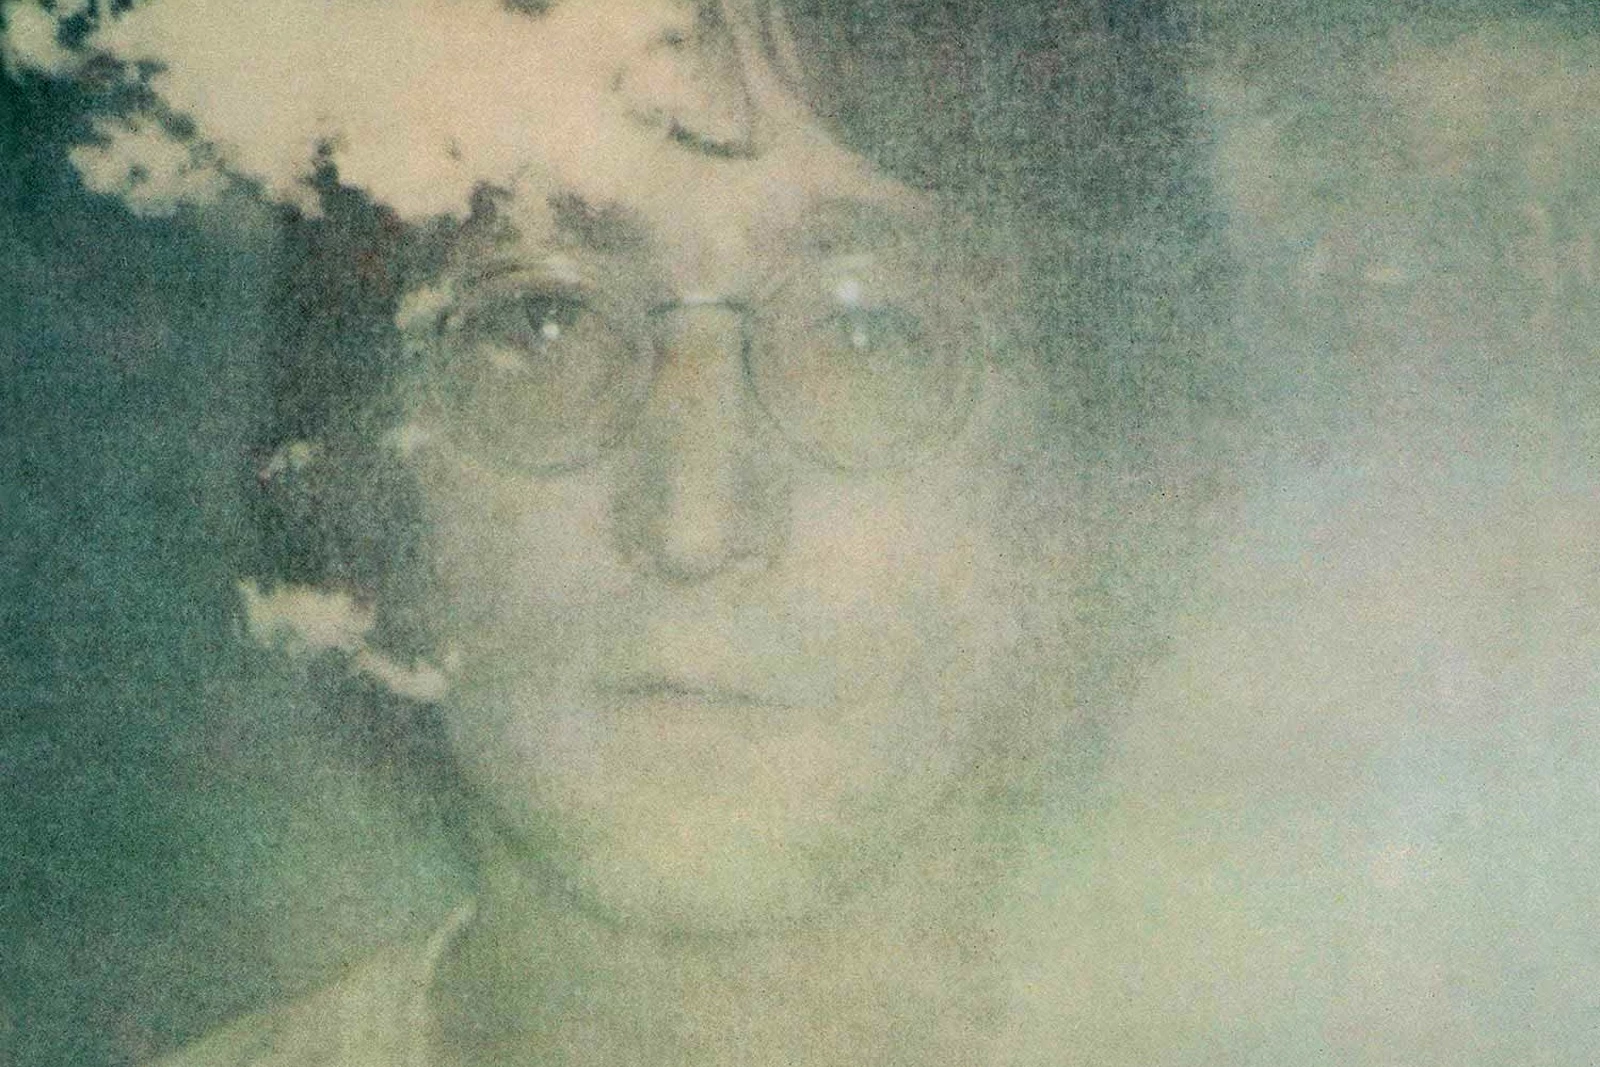 John Lennon's 'Imagine' Given Full Album Cover Treatment by GEMS